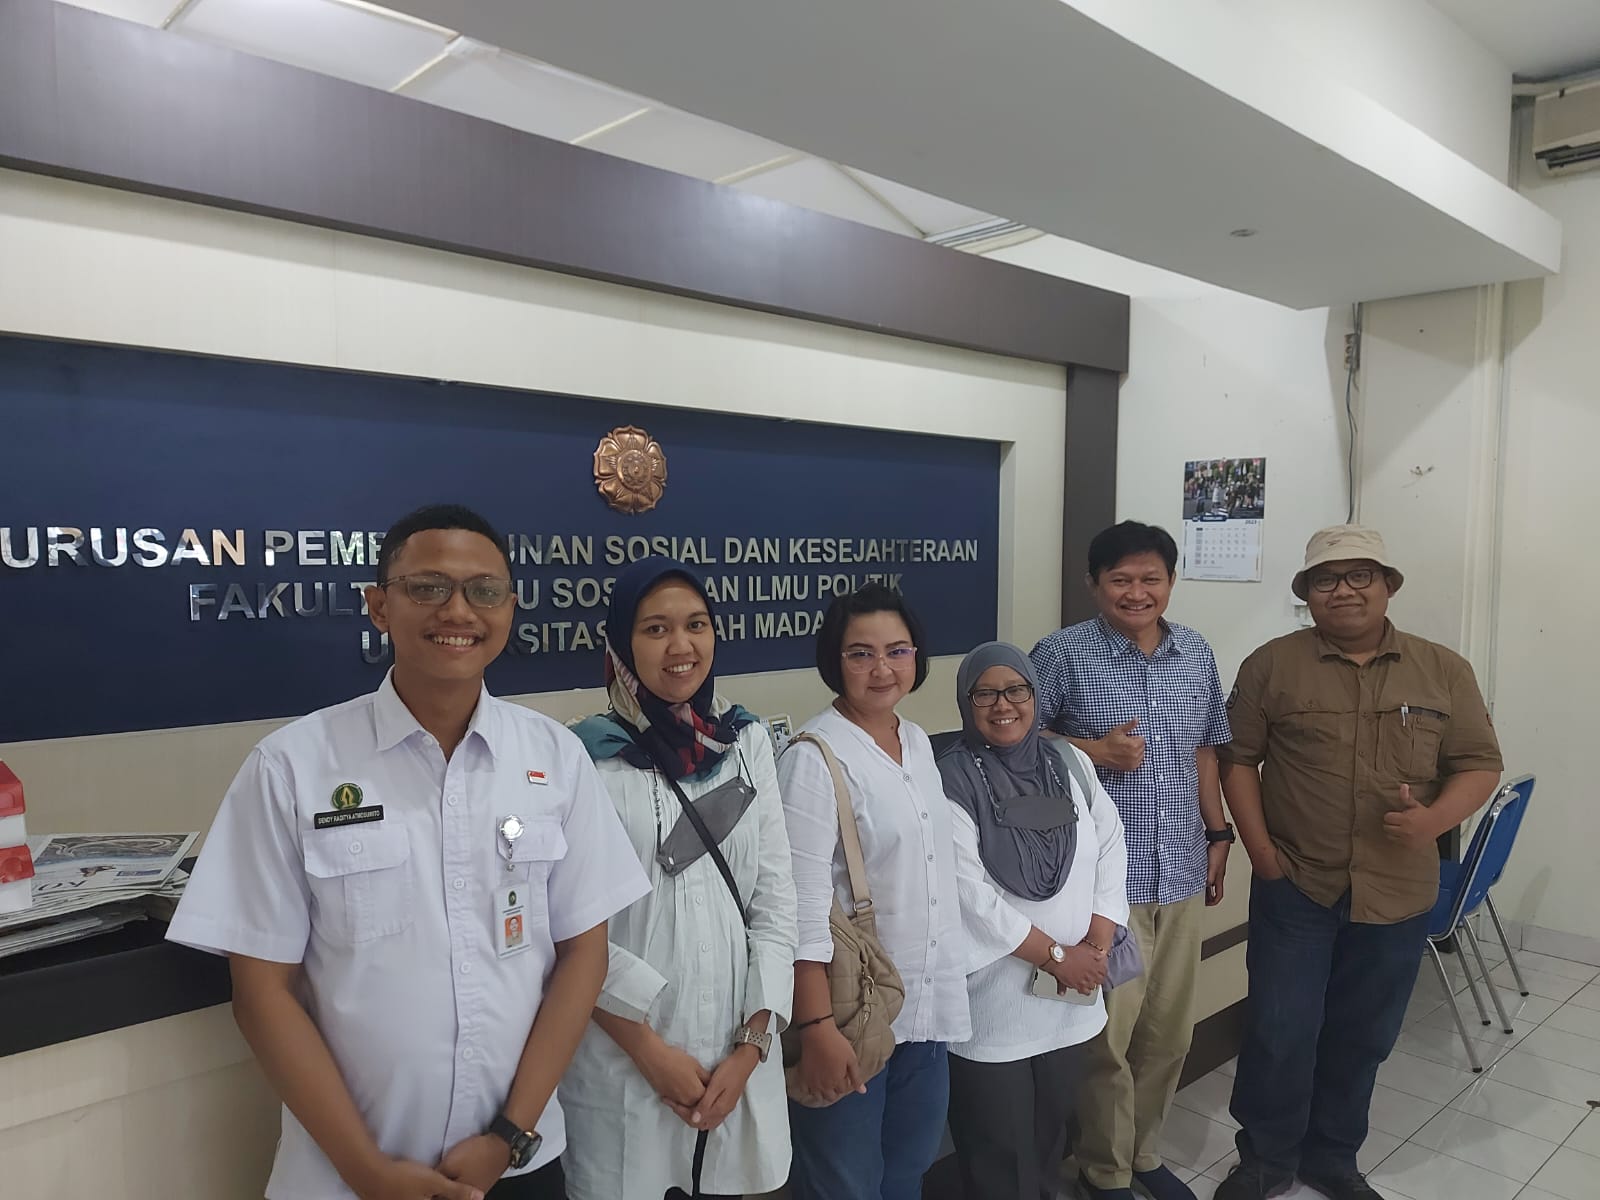 Bersama SODEC PSDK FISIPOL UGM, Kesbangpol Kota Yogyakarta membangun jembatan pengetahuan ke kebijakan (knowledge to policy)